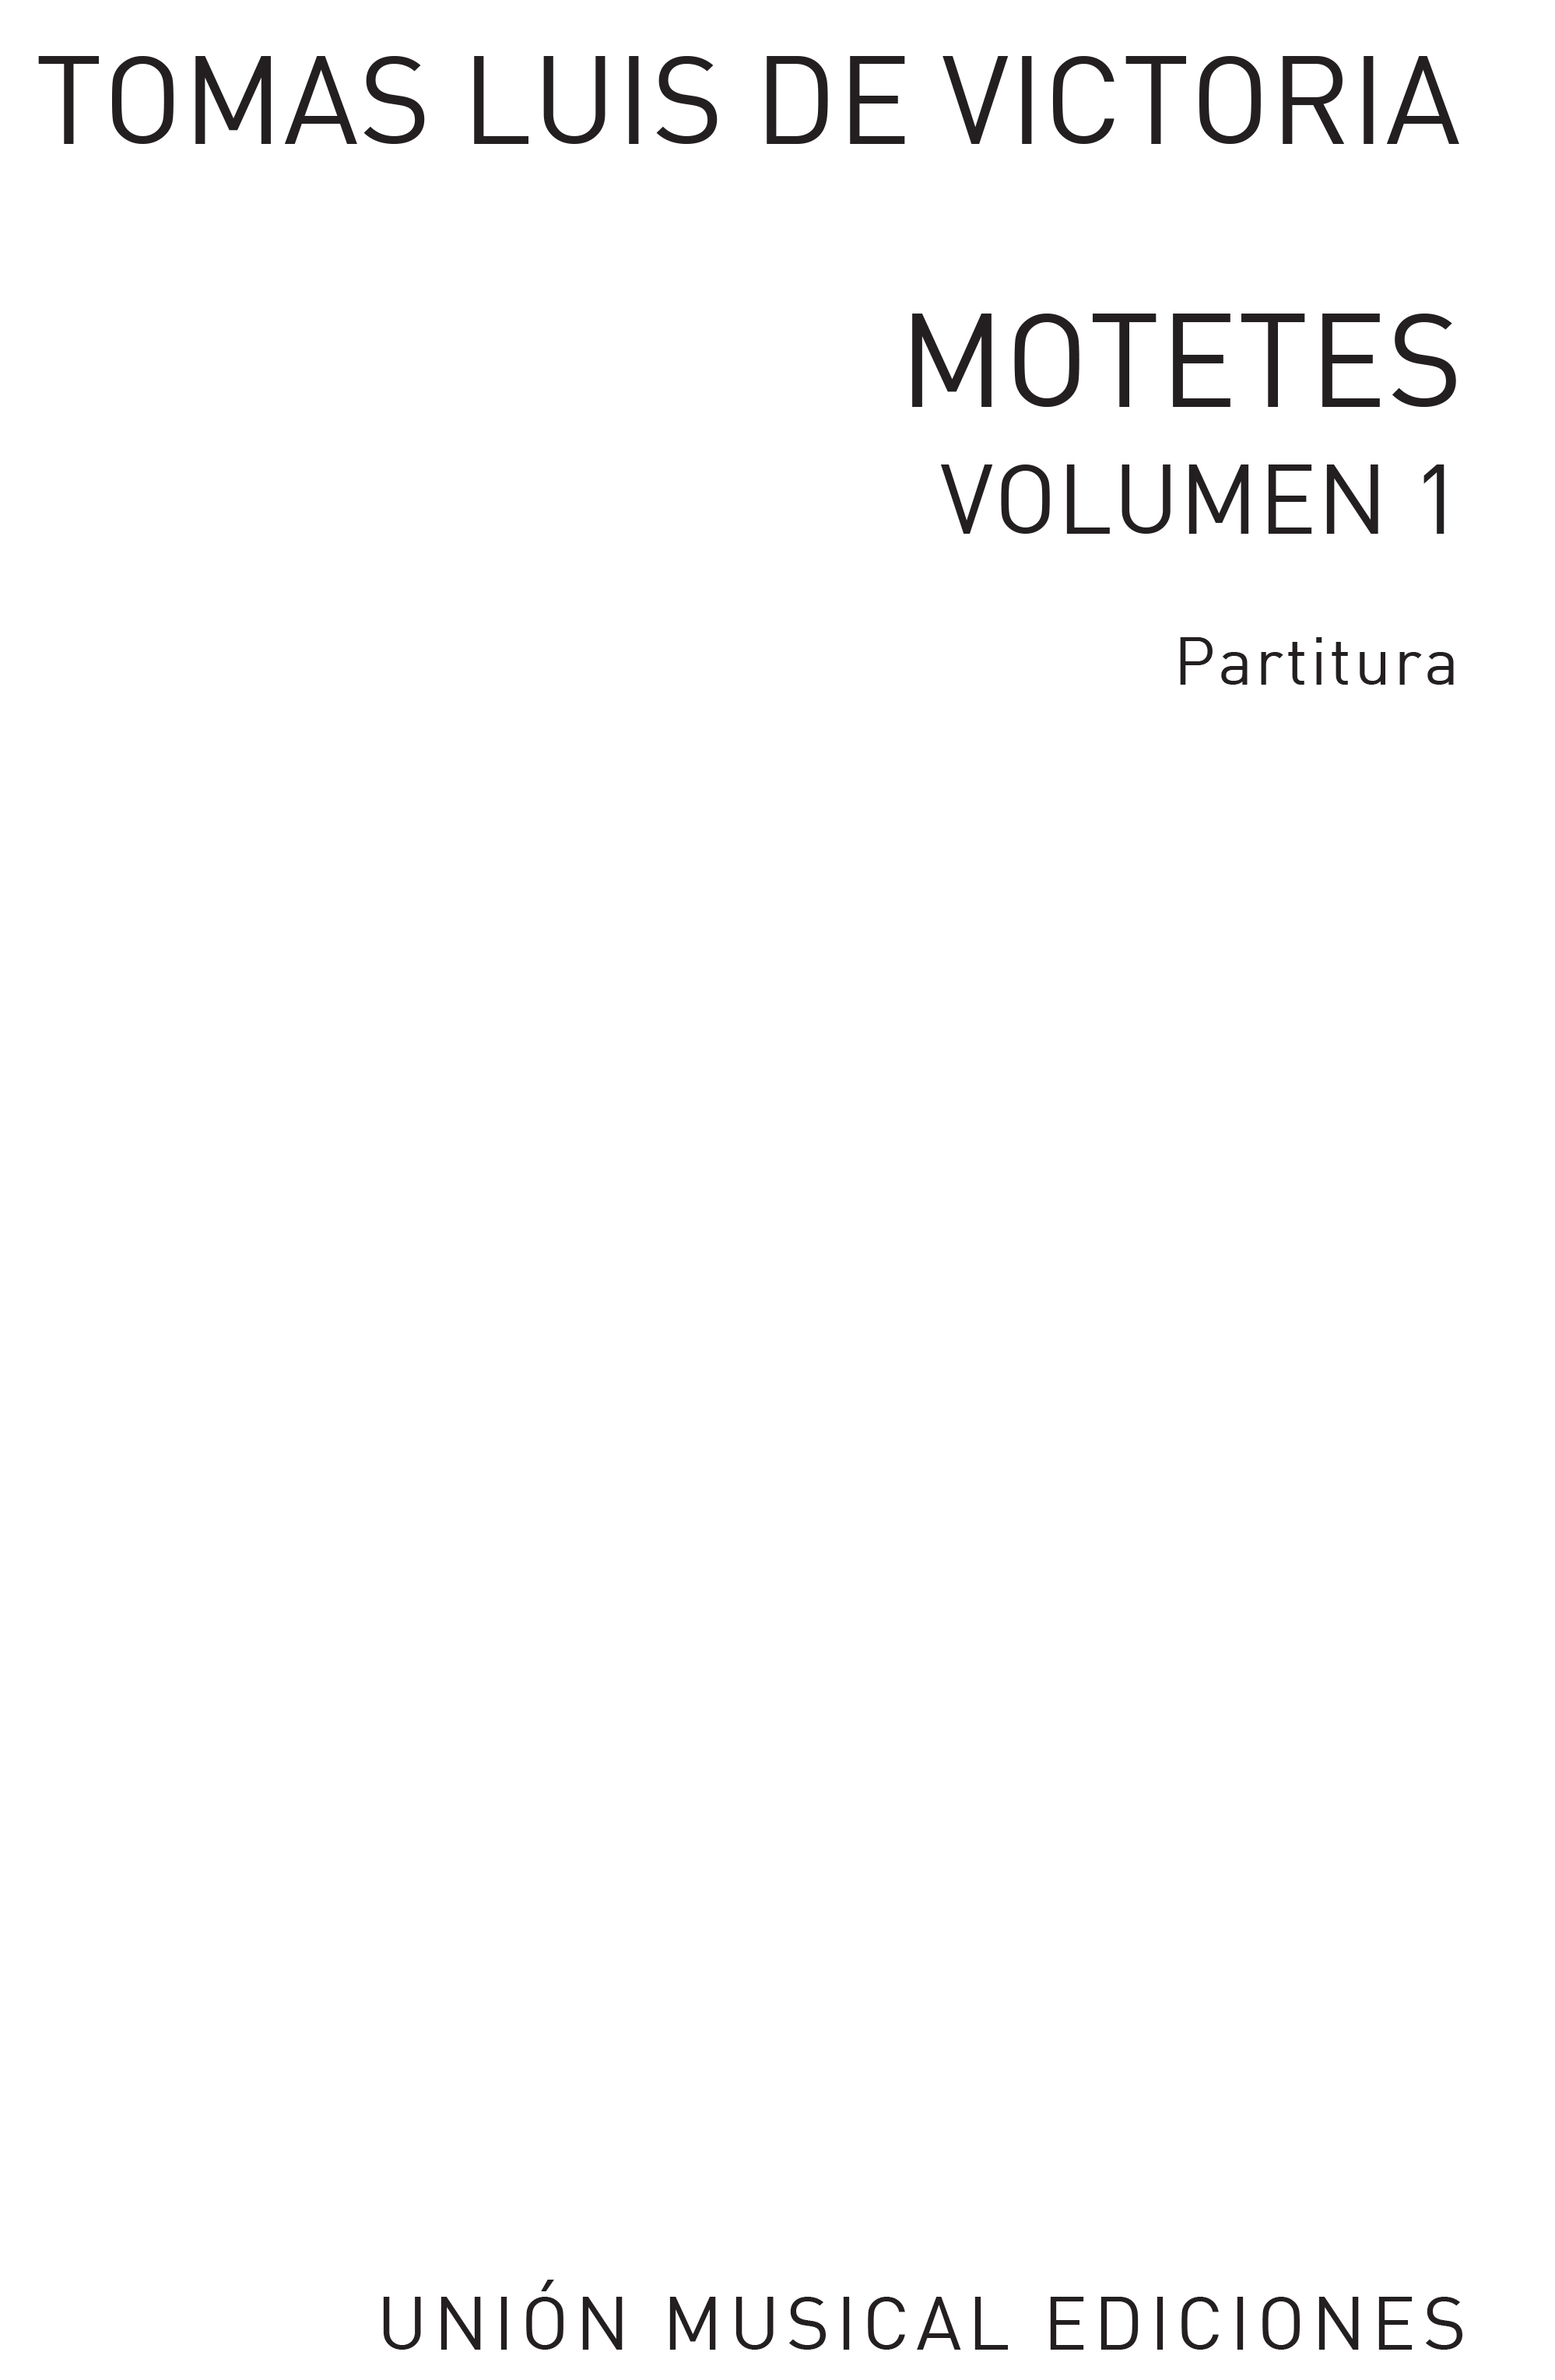 Tomás Luis de Victoria: 52 Motets Volume 1: Voice: Instrumental Work